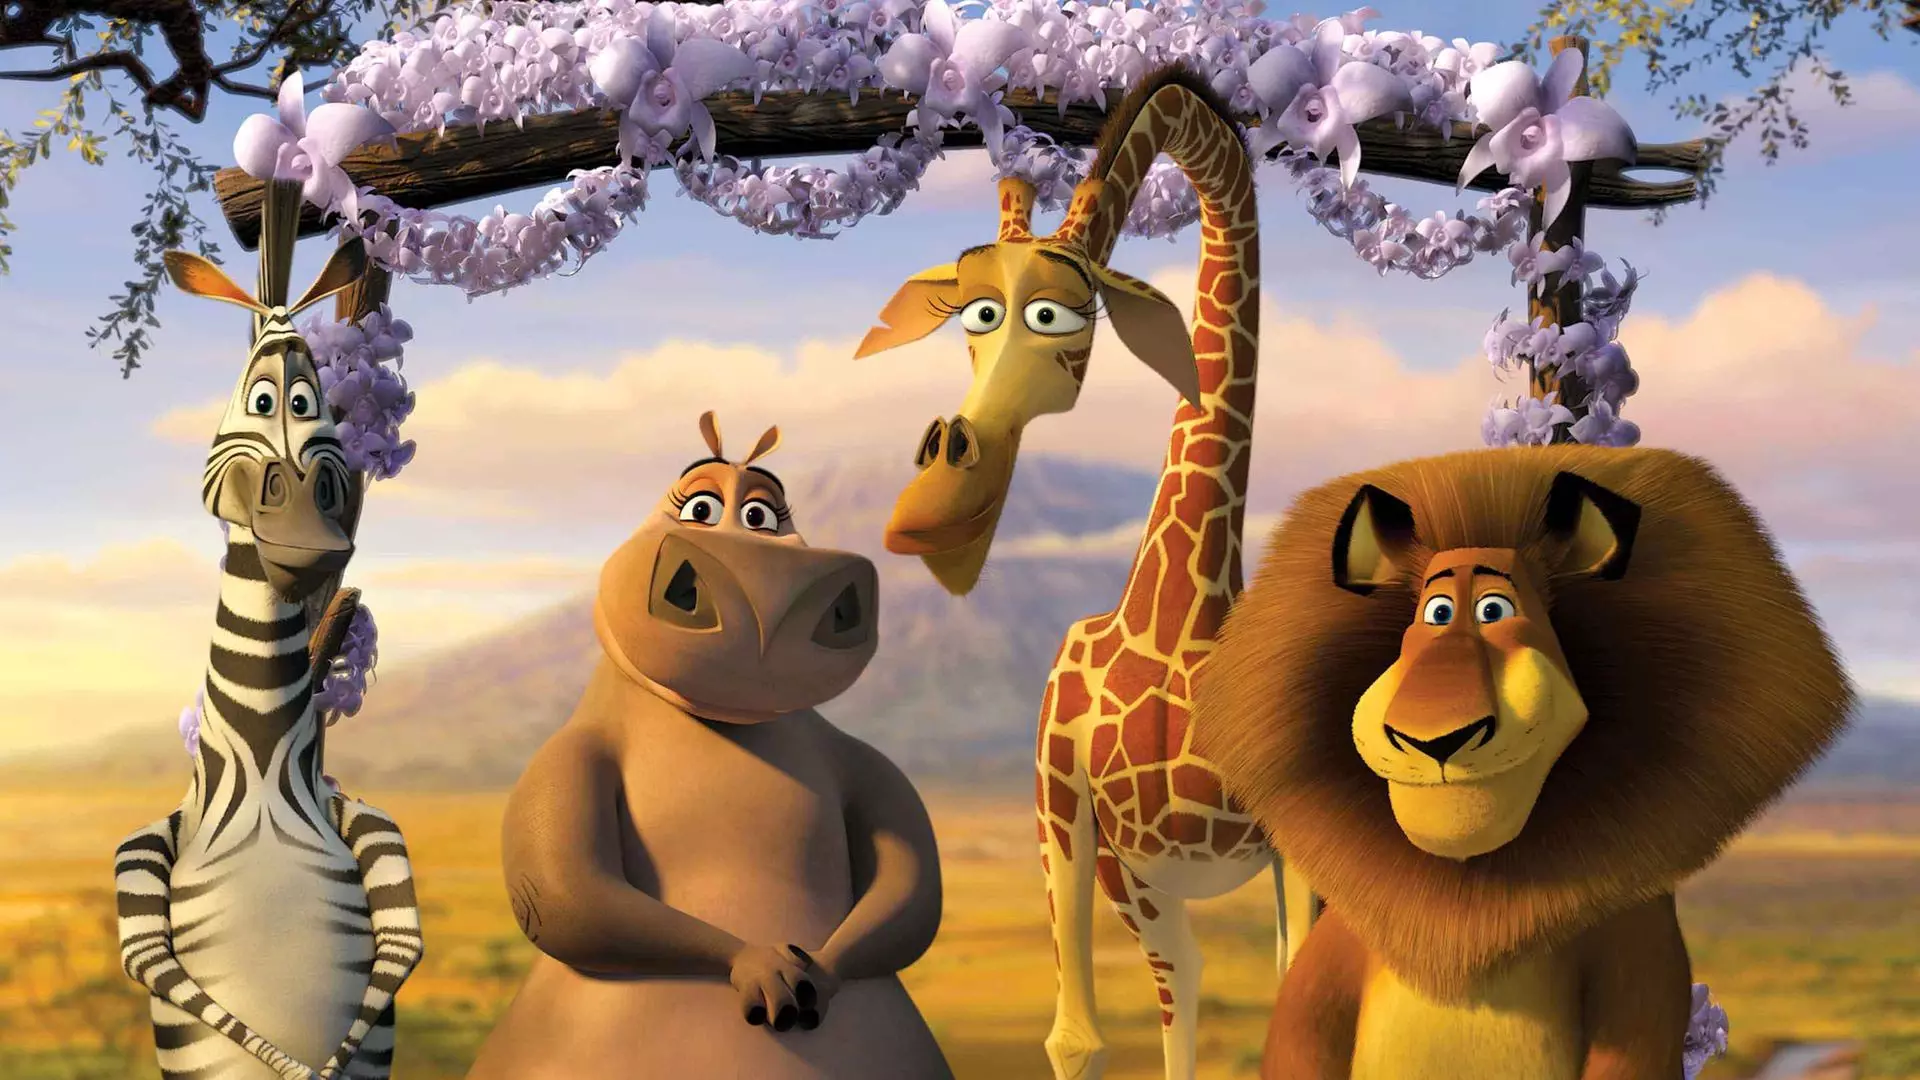 الکس، ملمن، گلوریا و مارتی در انیمیشن ماداگاسکار